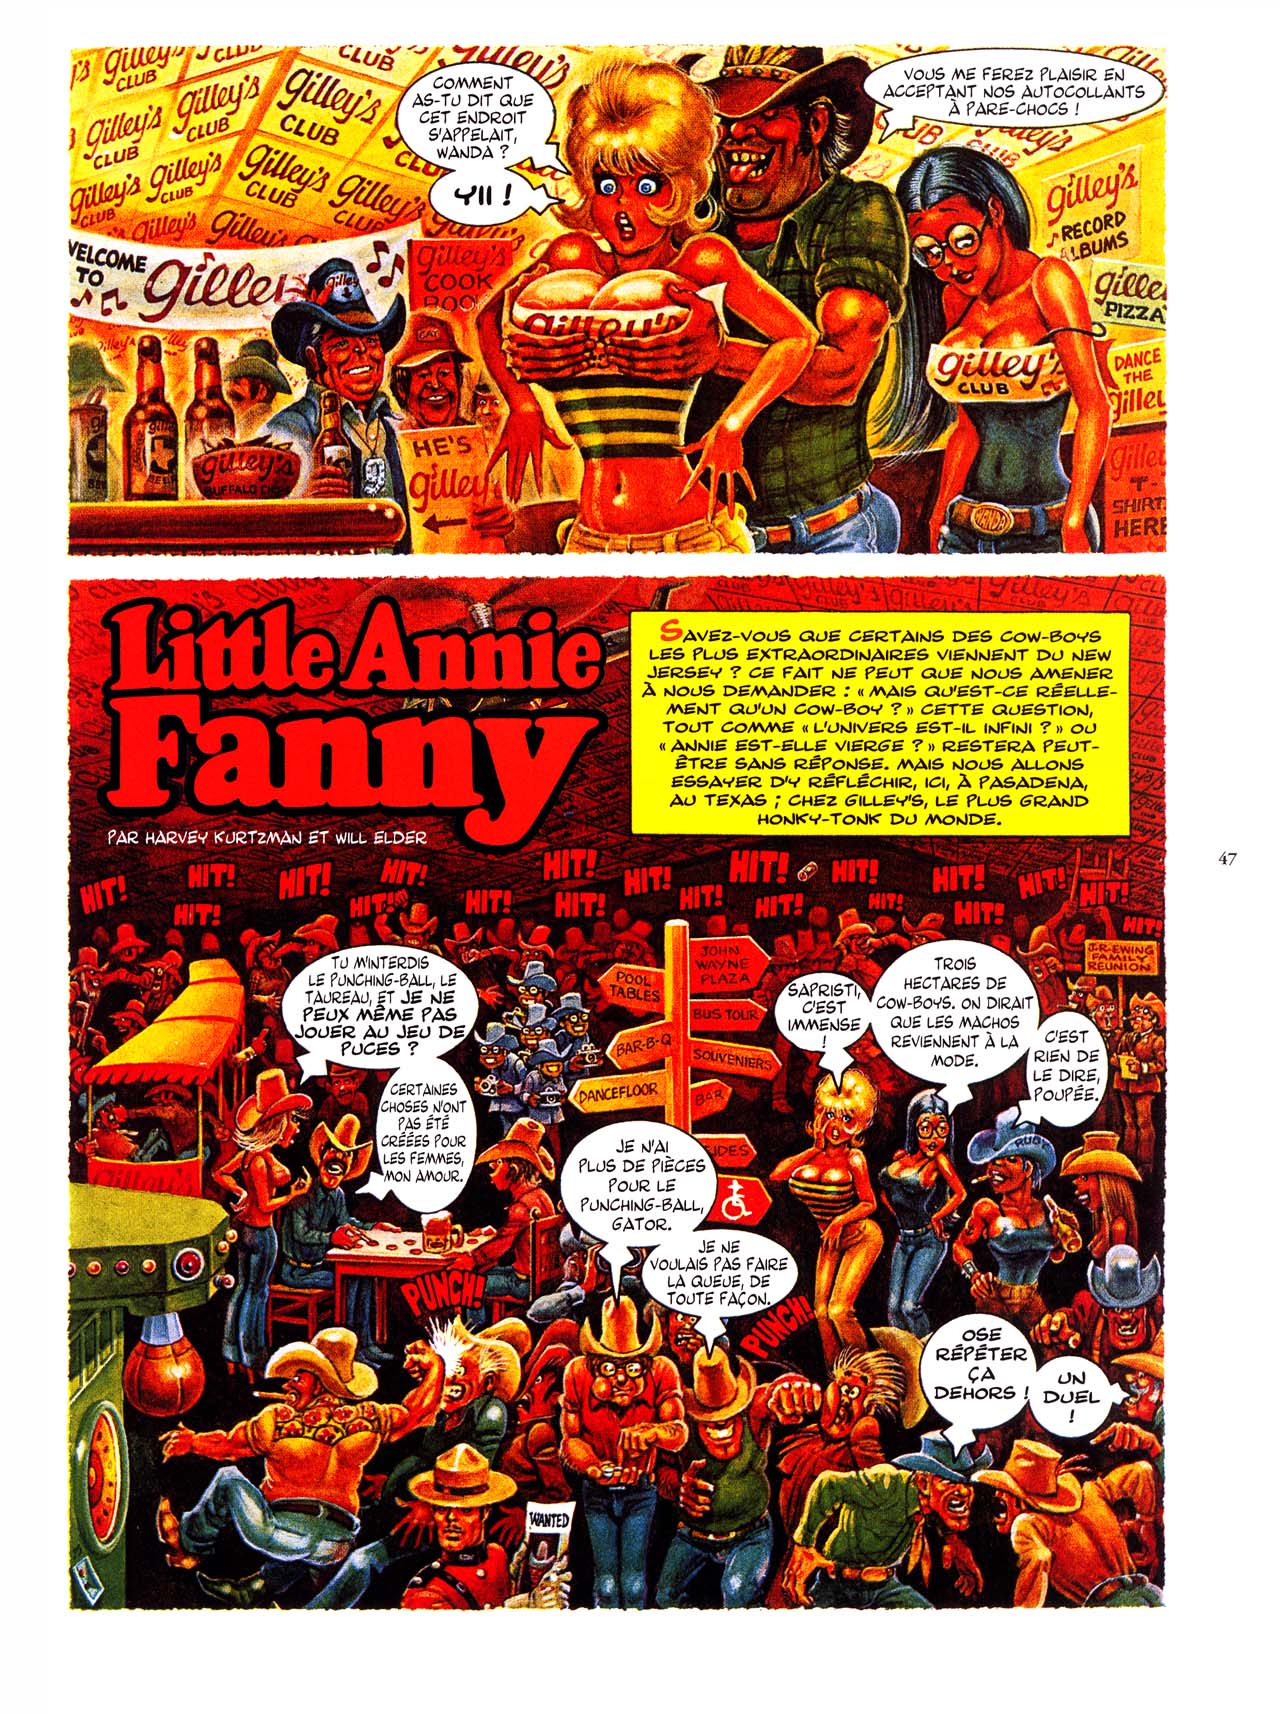 Little Annie Fanny - 04 - 78-88 numero d'image 48